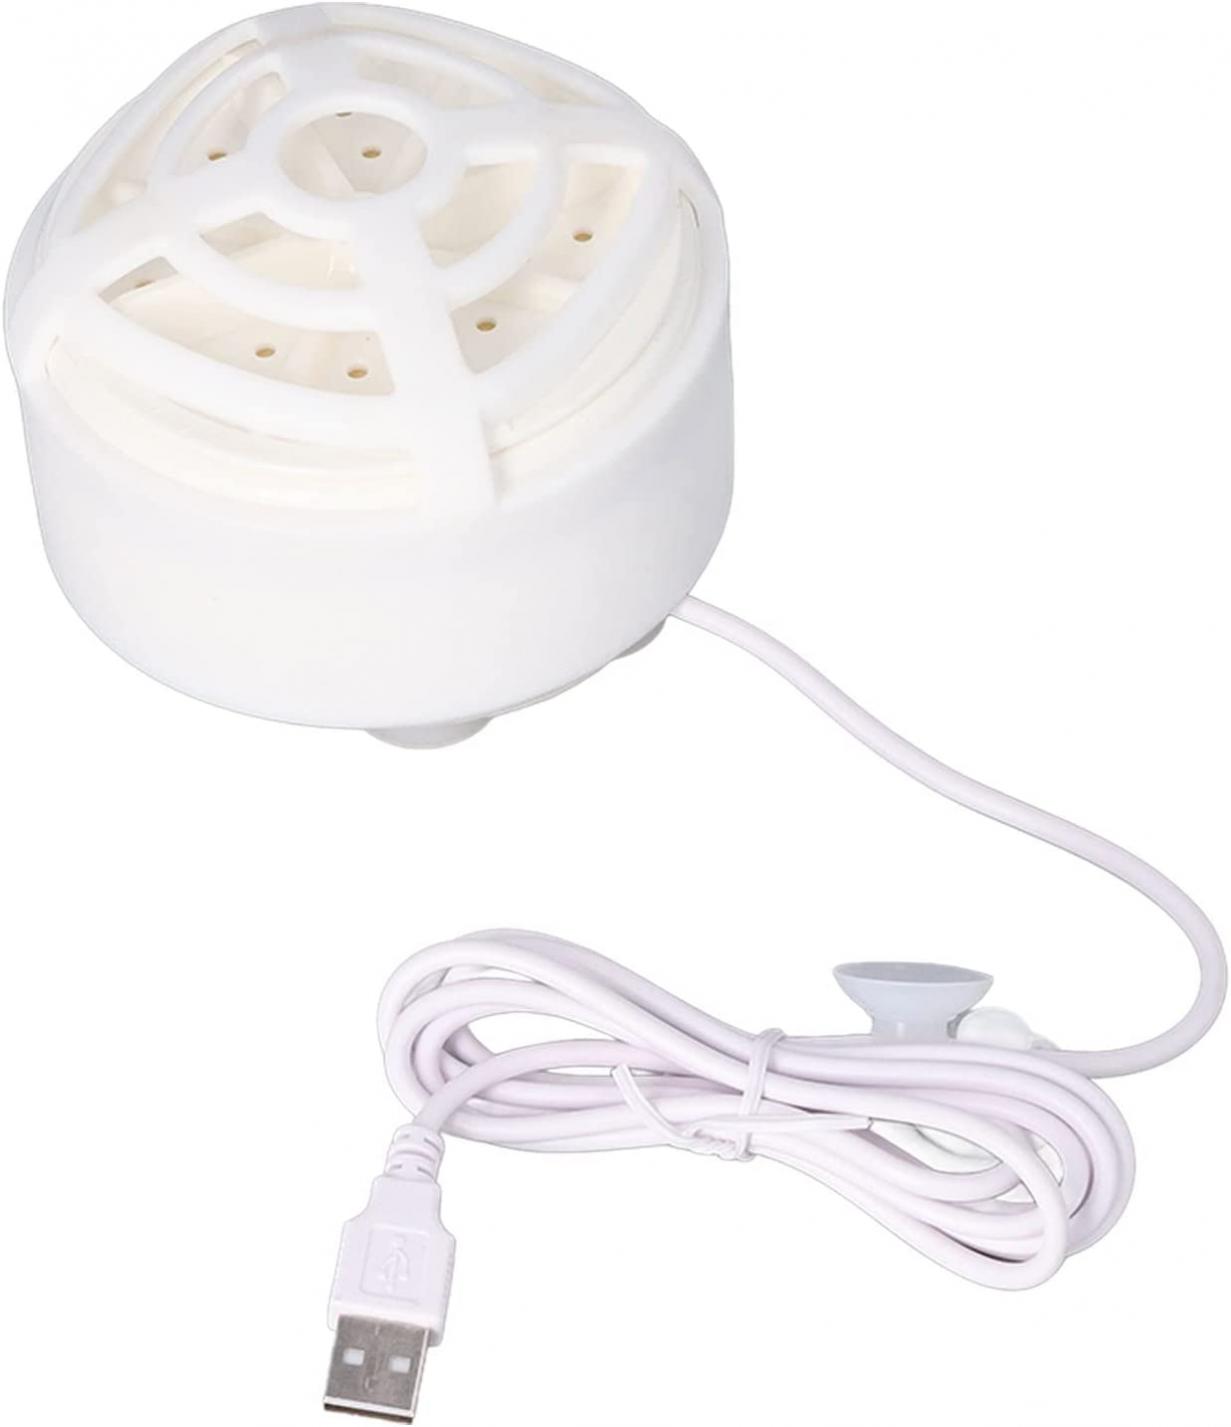 Janzoom Mini Fruit Dishwasher, Mini Dishwasher USB Powered Easy to Use White for Kitchen